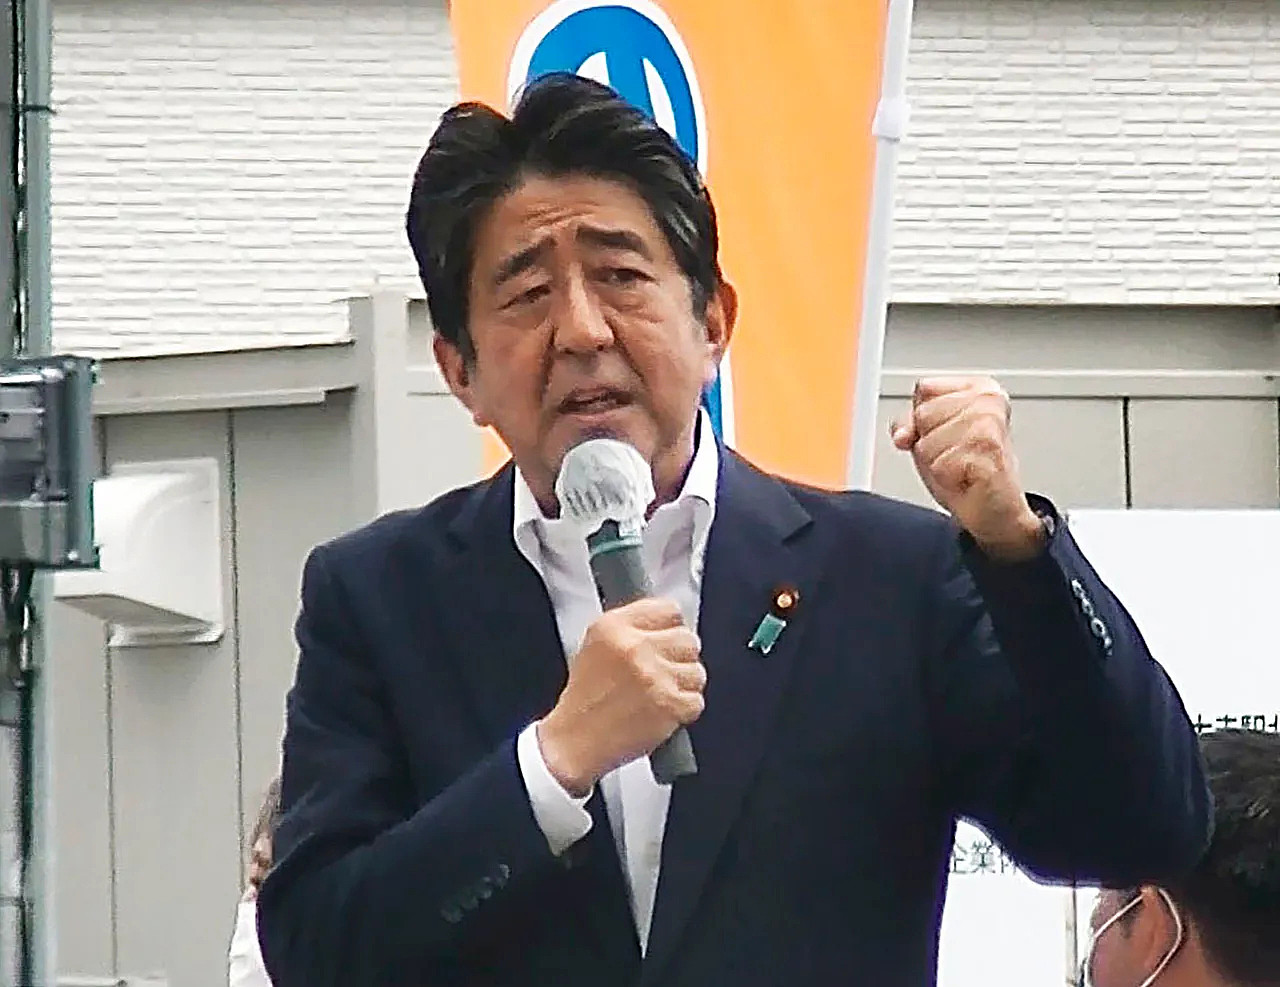 日本前首相安倍晋三2022年7月8日在奈良县助选的画面。 他后来遭人从背后以土制手枪暗杀，送医抢救不治。 美联社